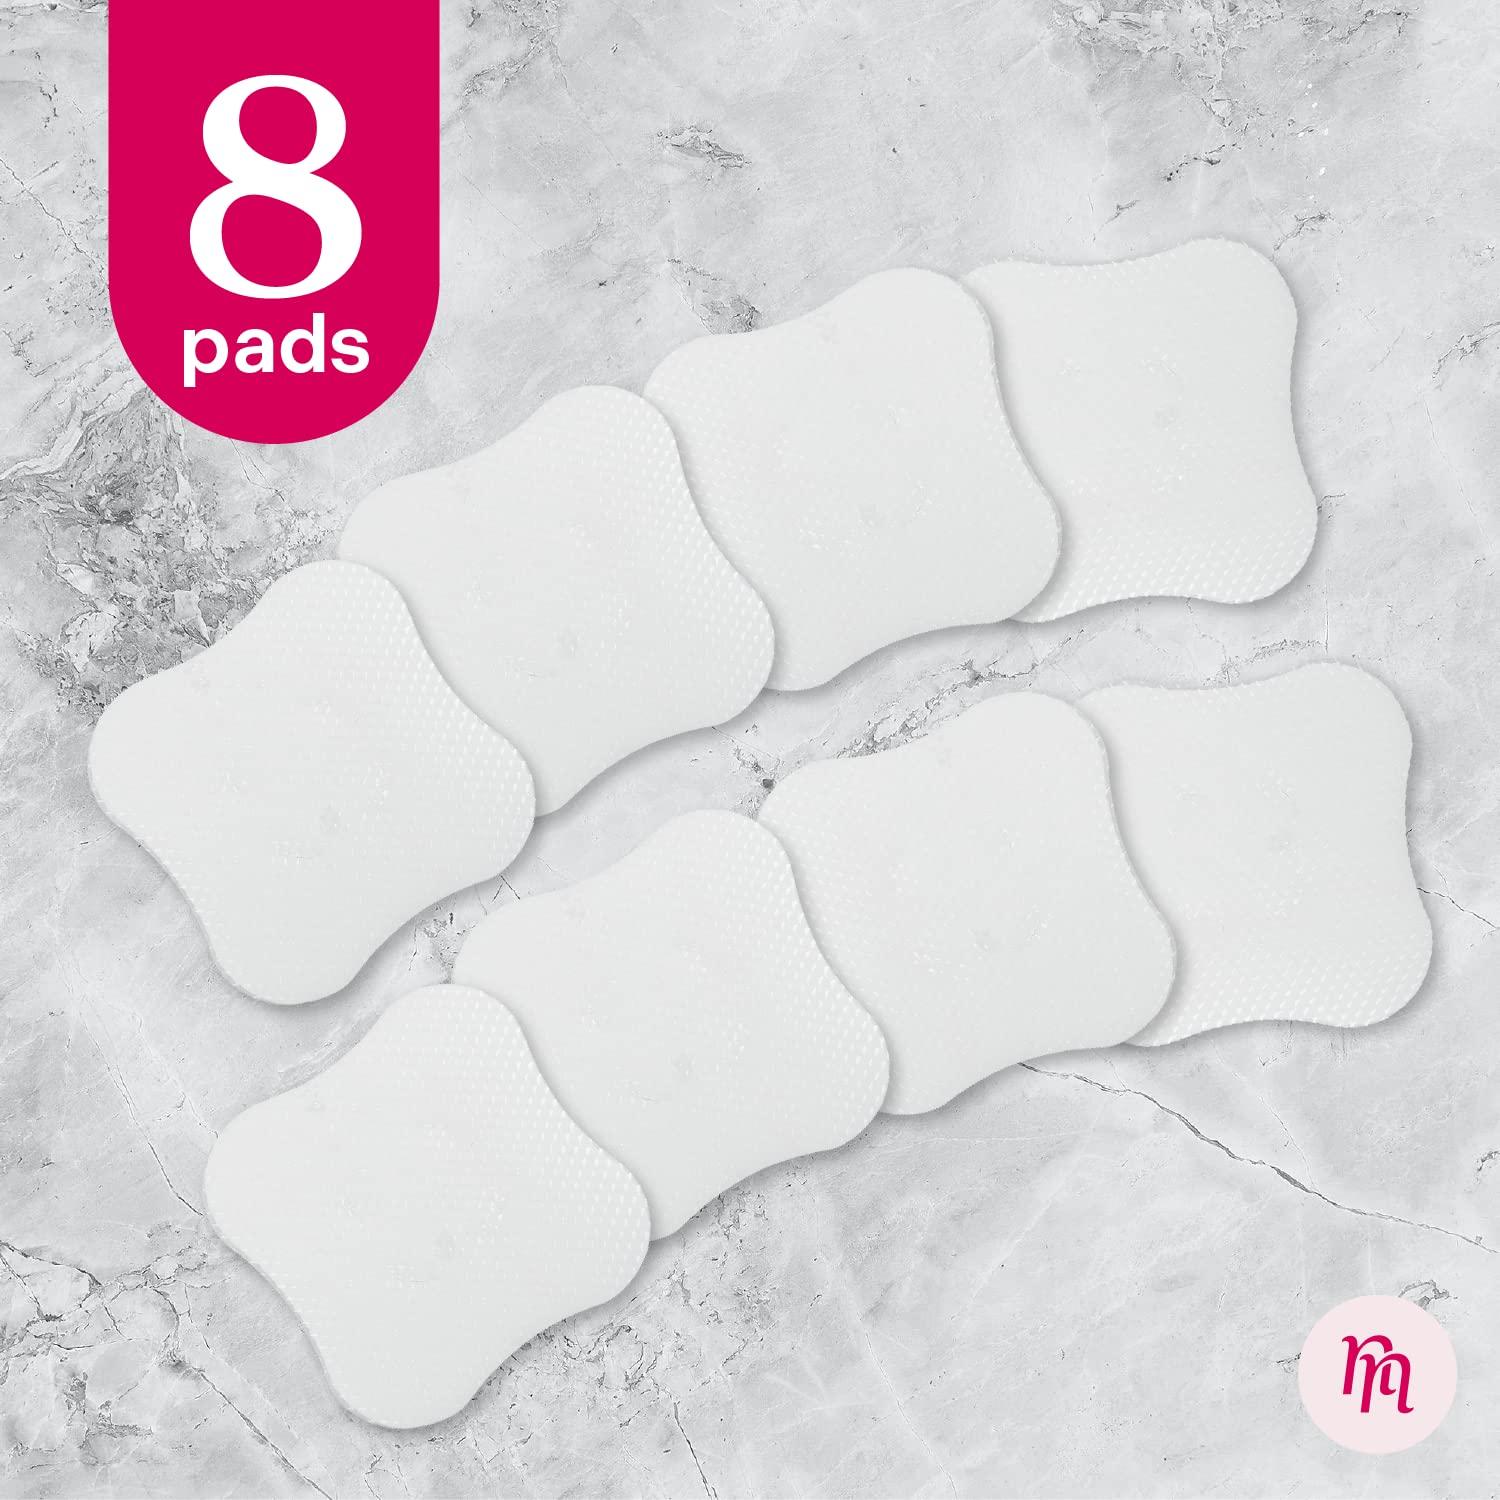 ™ Hydrogel Nipple Pads for Breastfeeding - Nipple Cooling Gel Pads for  Breastfee